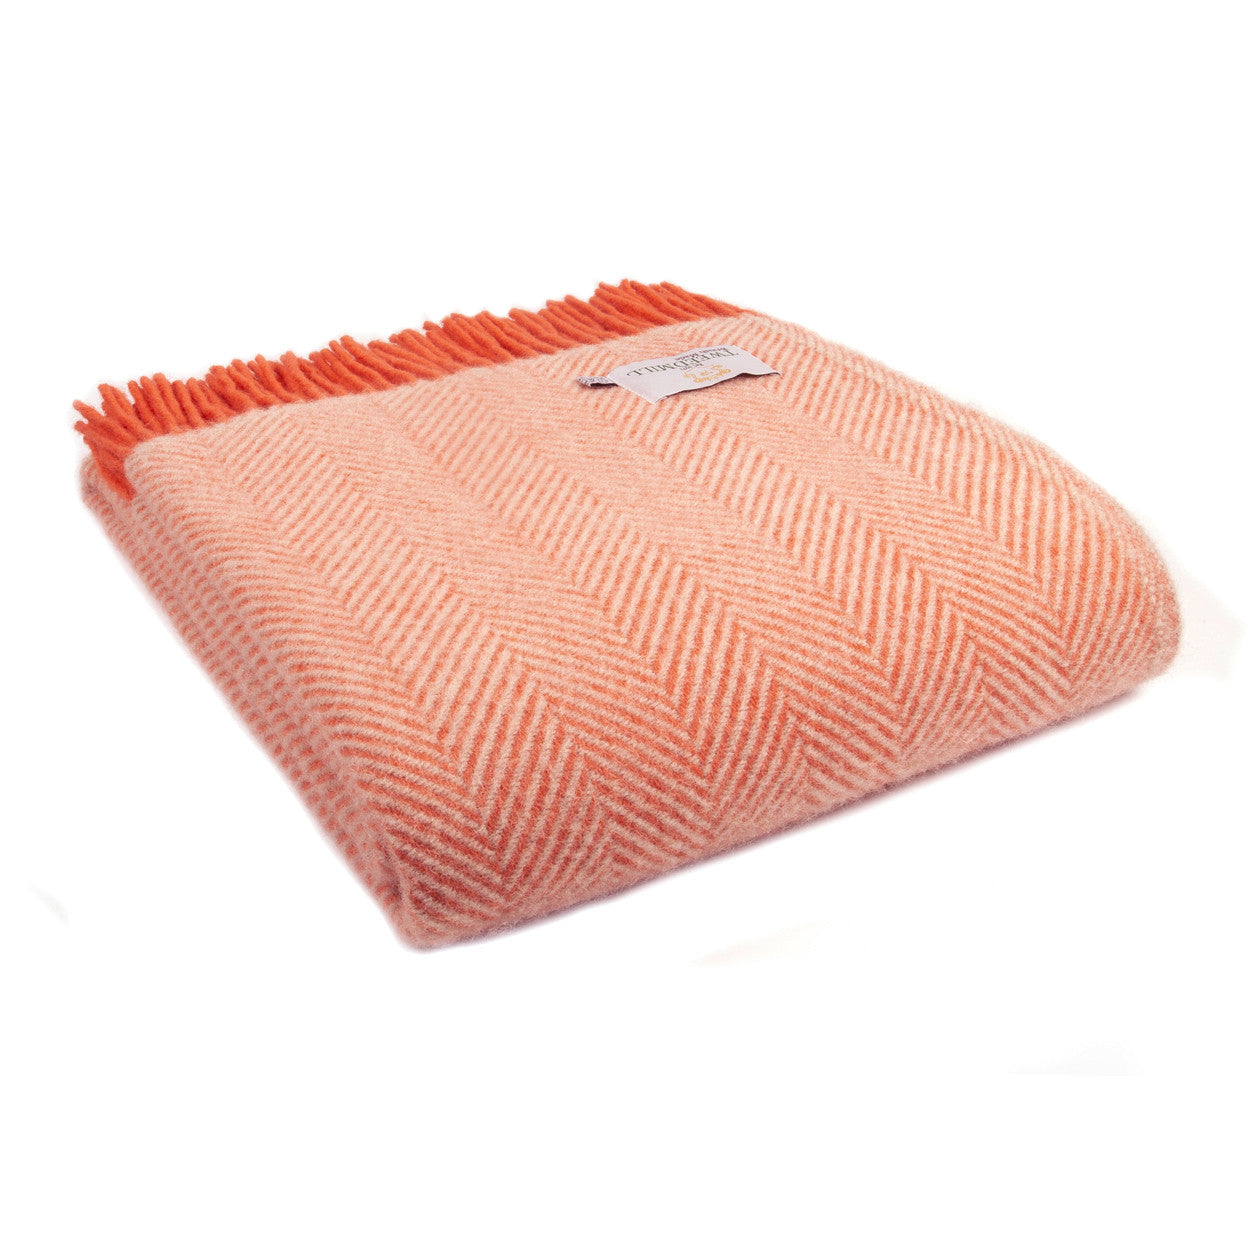 Flamingo and Pearl Herringbone Welsh Blanket by Tweedmill